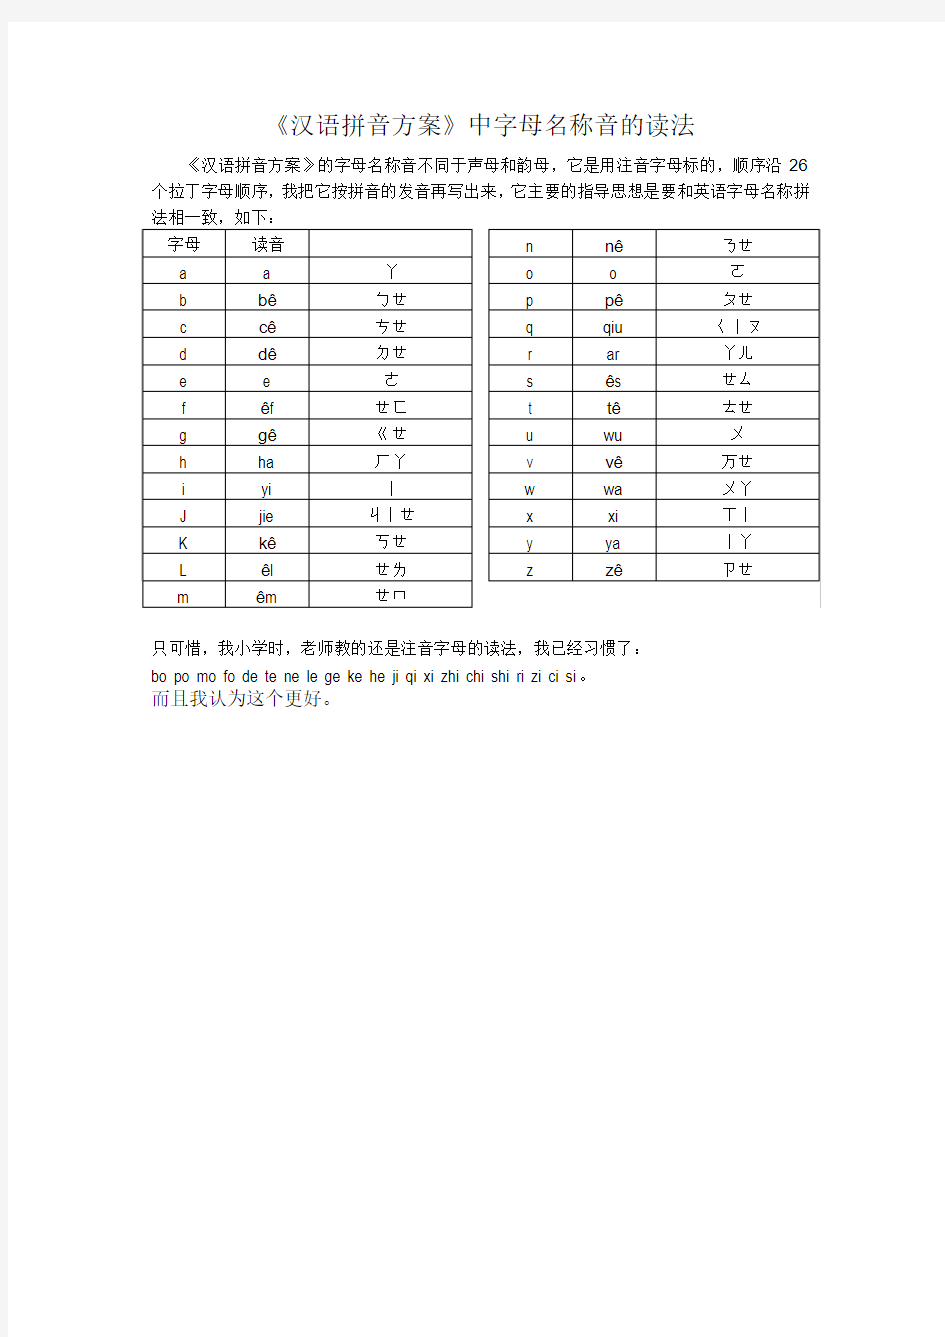 汉语拼音方案中字母的名称音